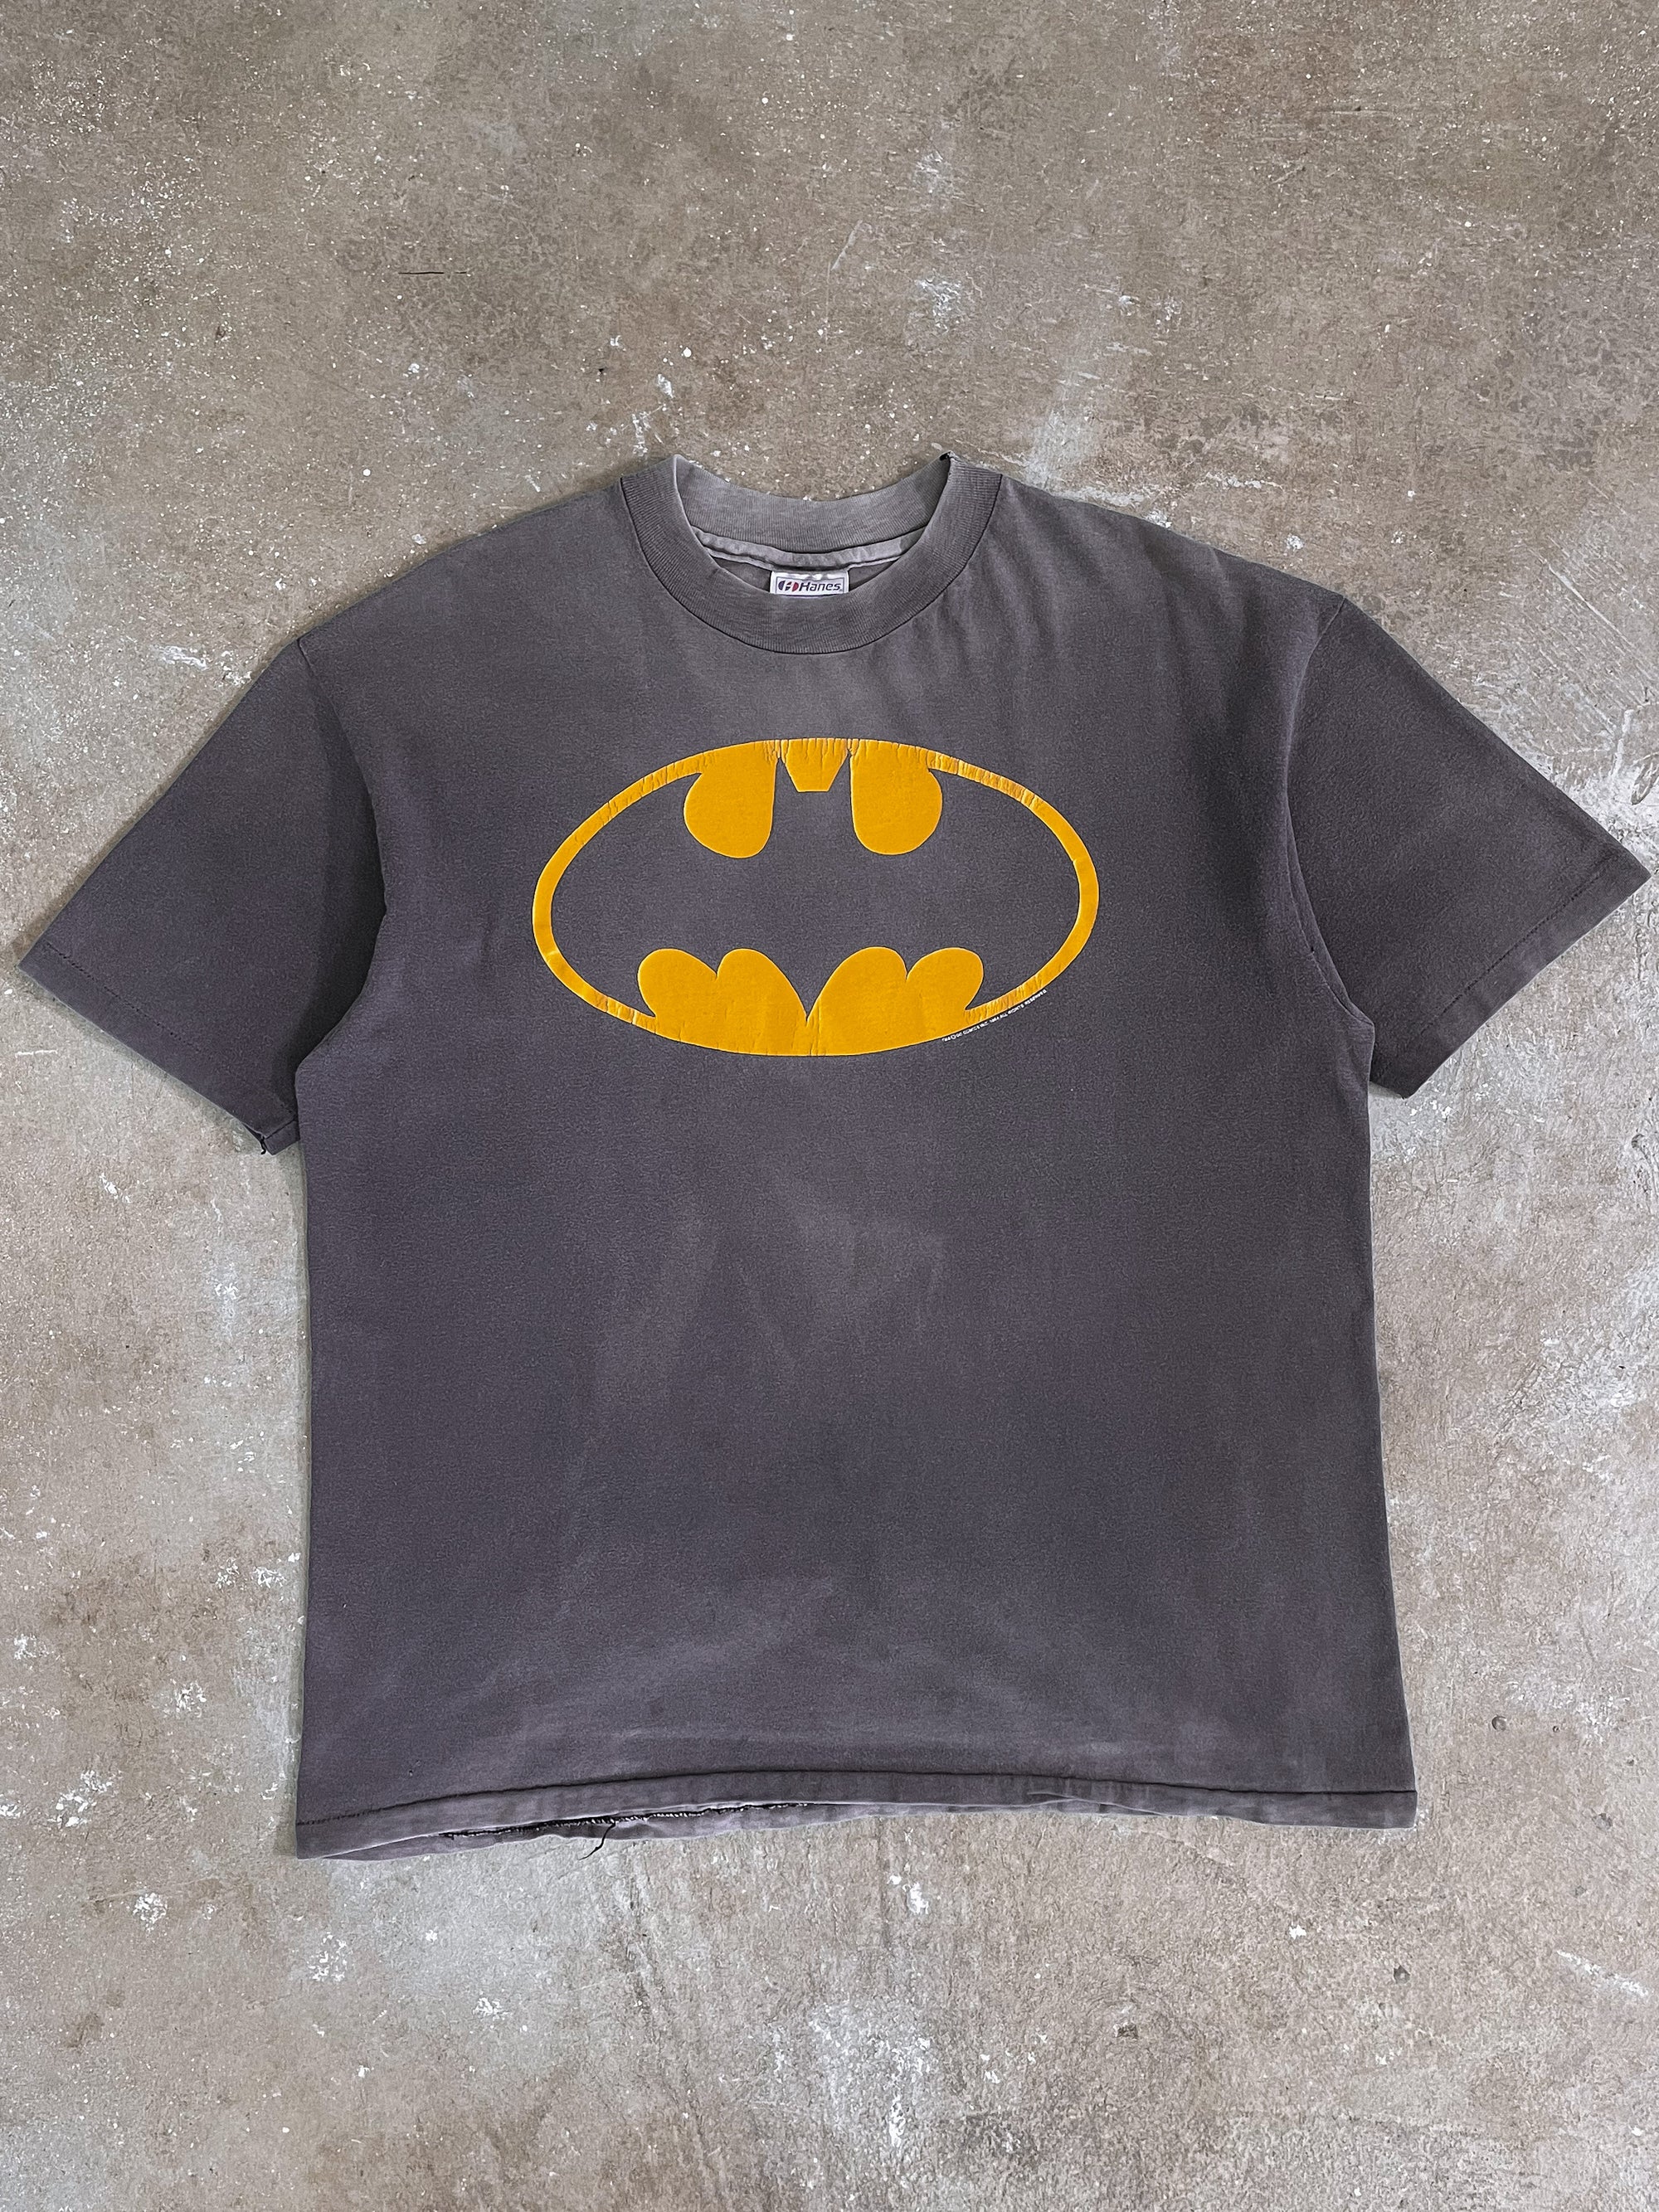 1990s “Batman” Sun Faded Single Stitched Tee (L)